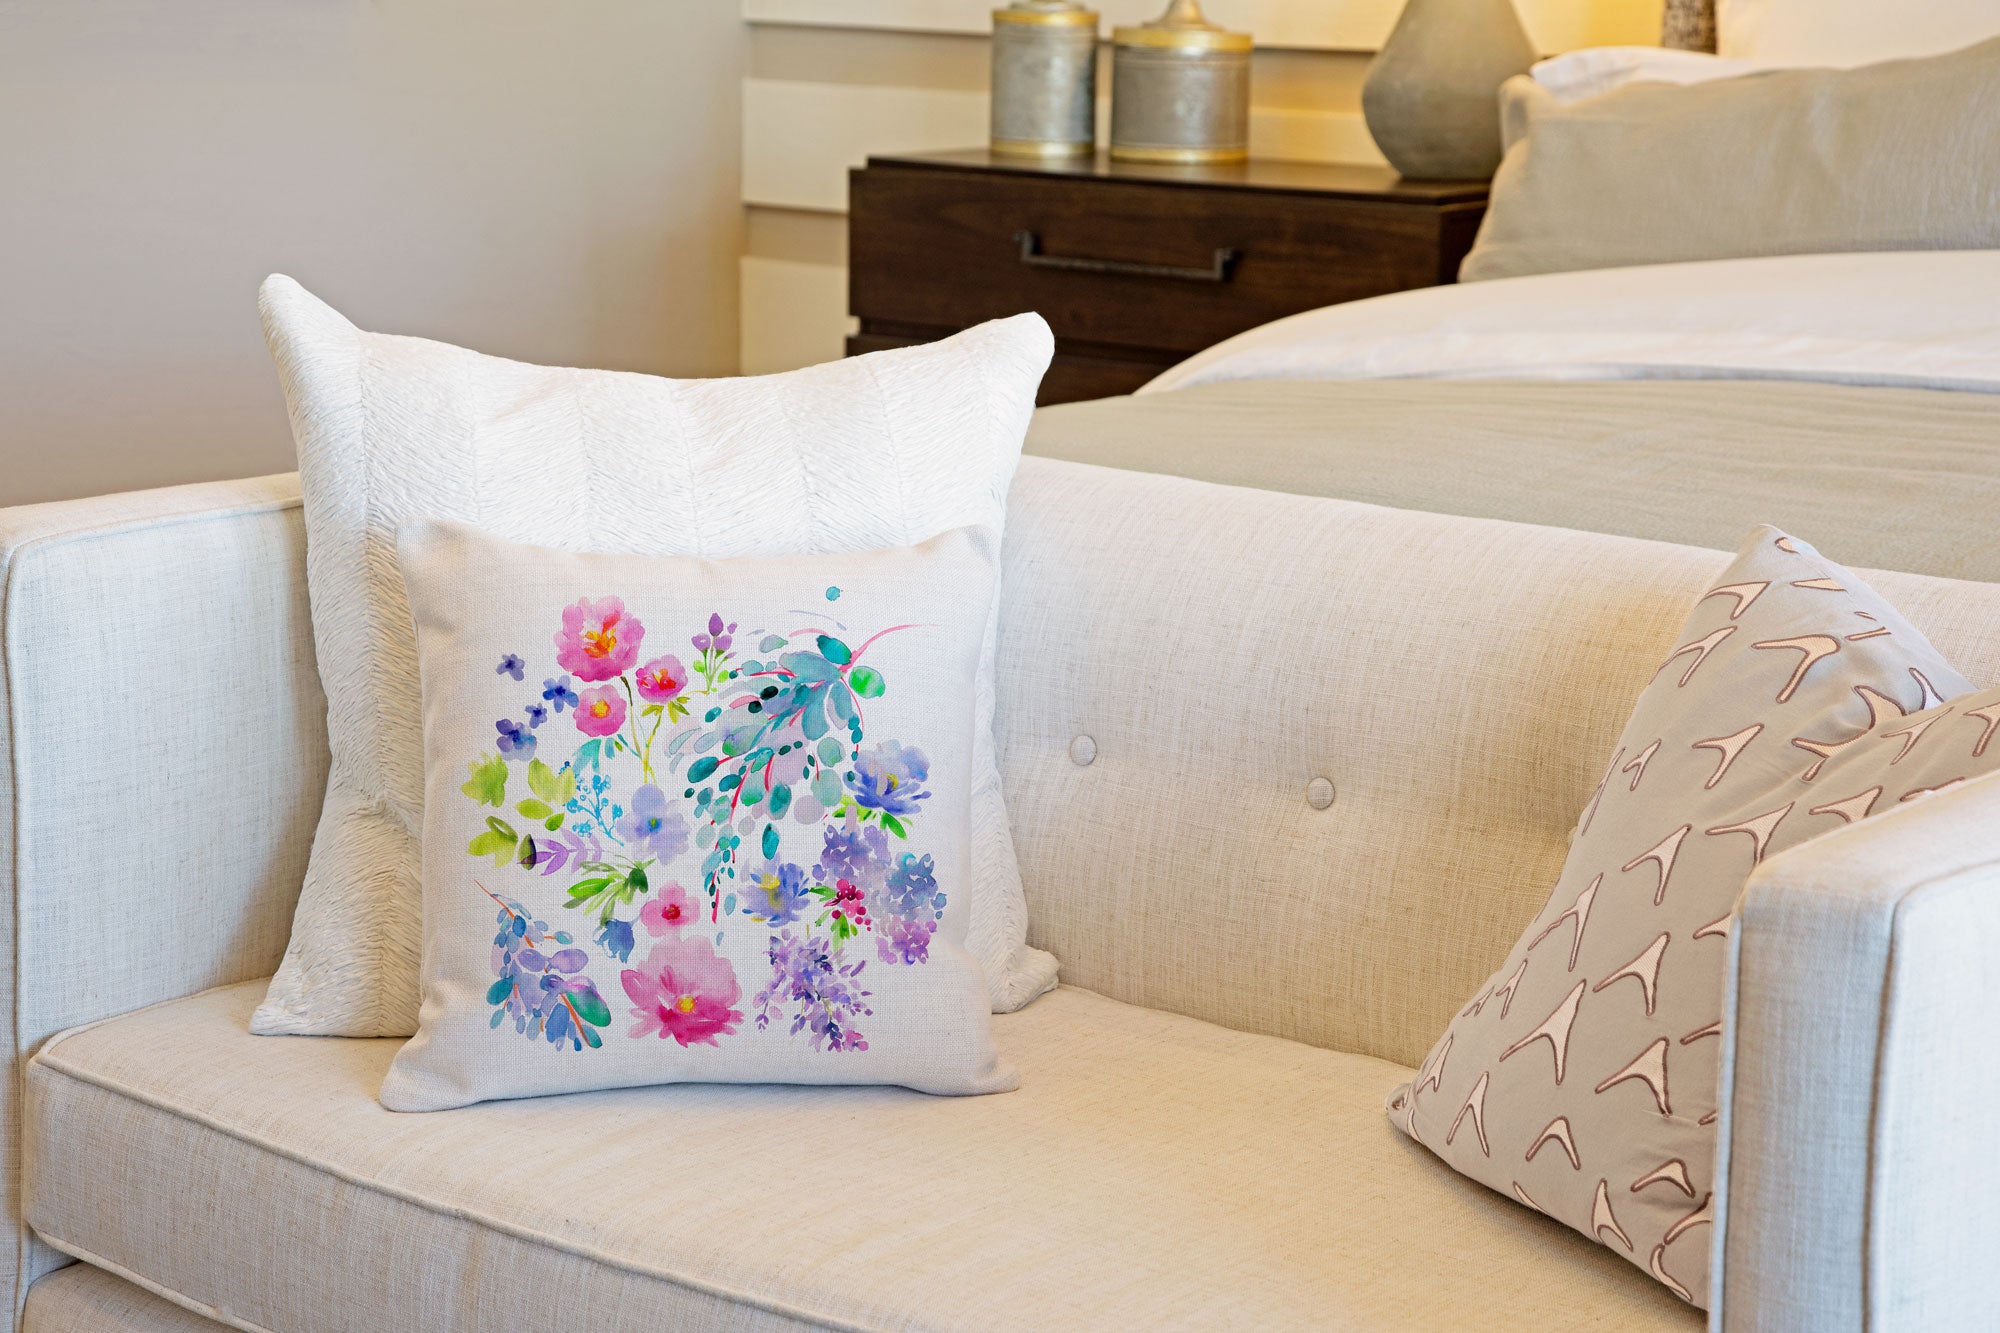 Flower Garden Throw Pillow Cover - Decorative Designs Throw Pillow Cover Collection